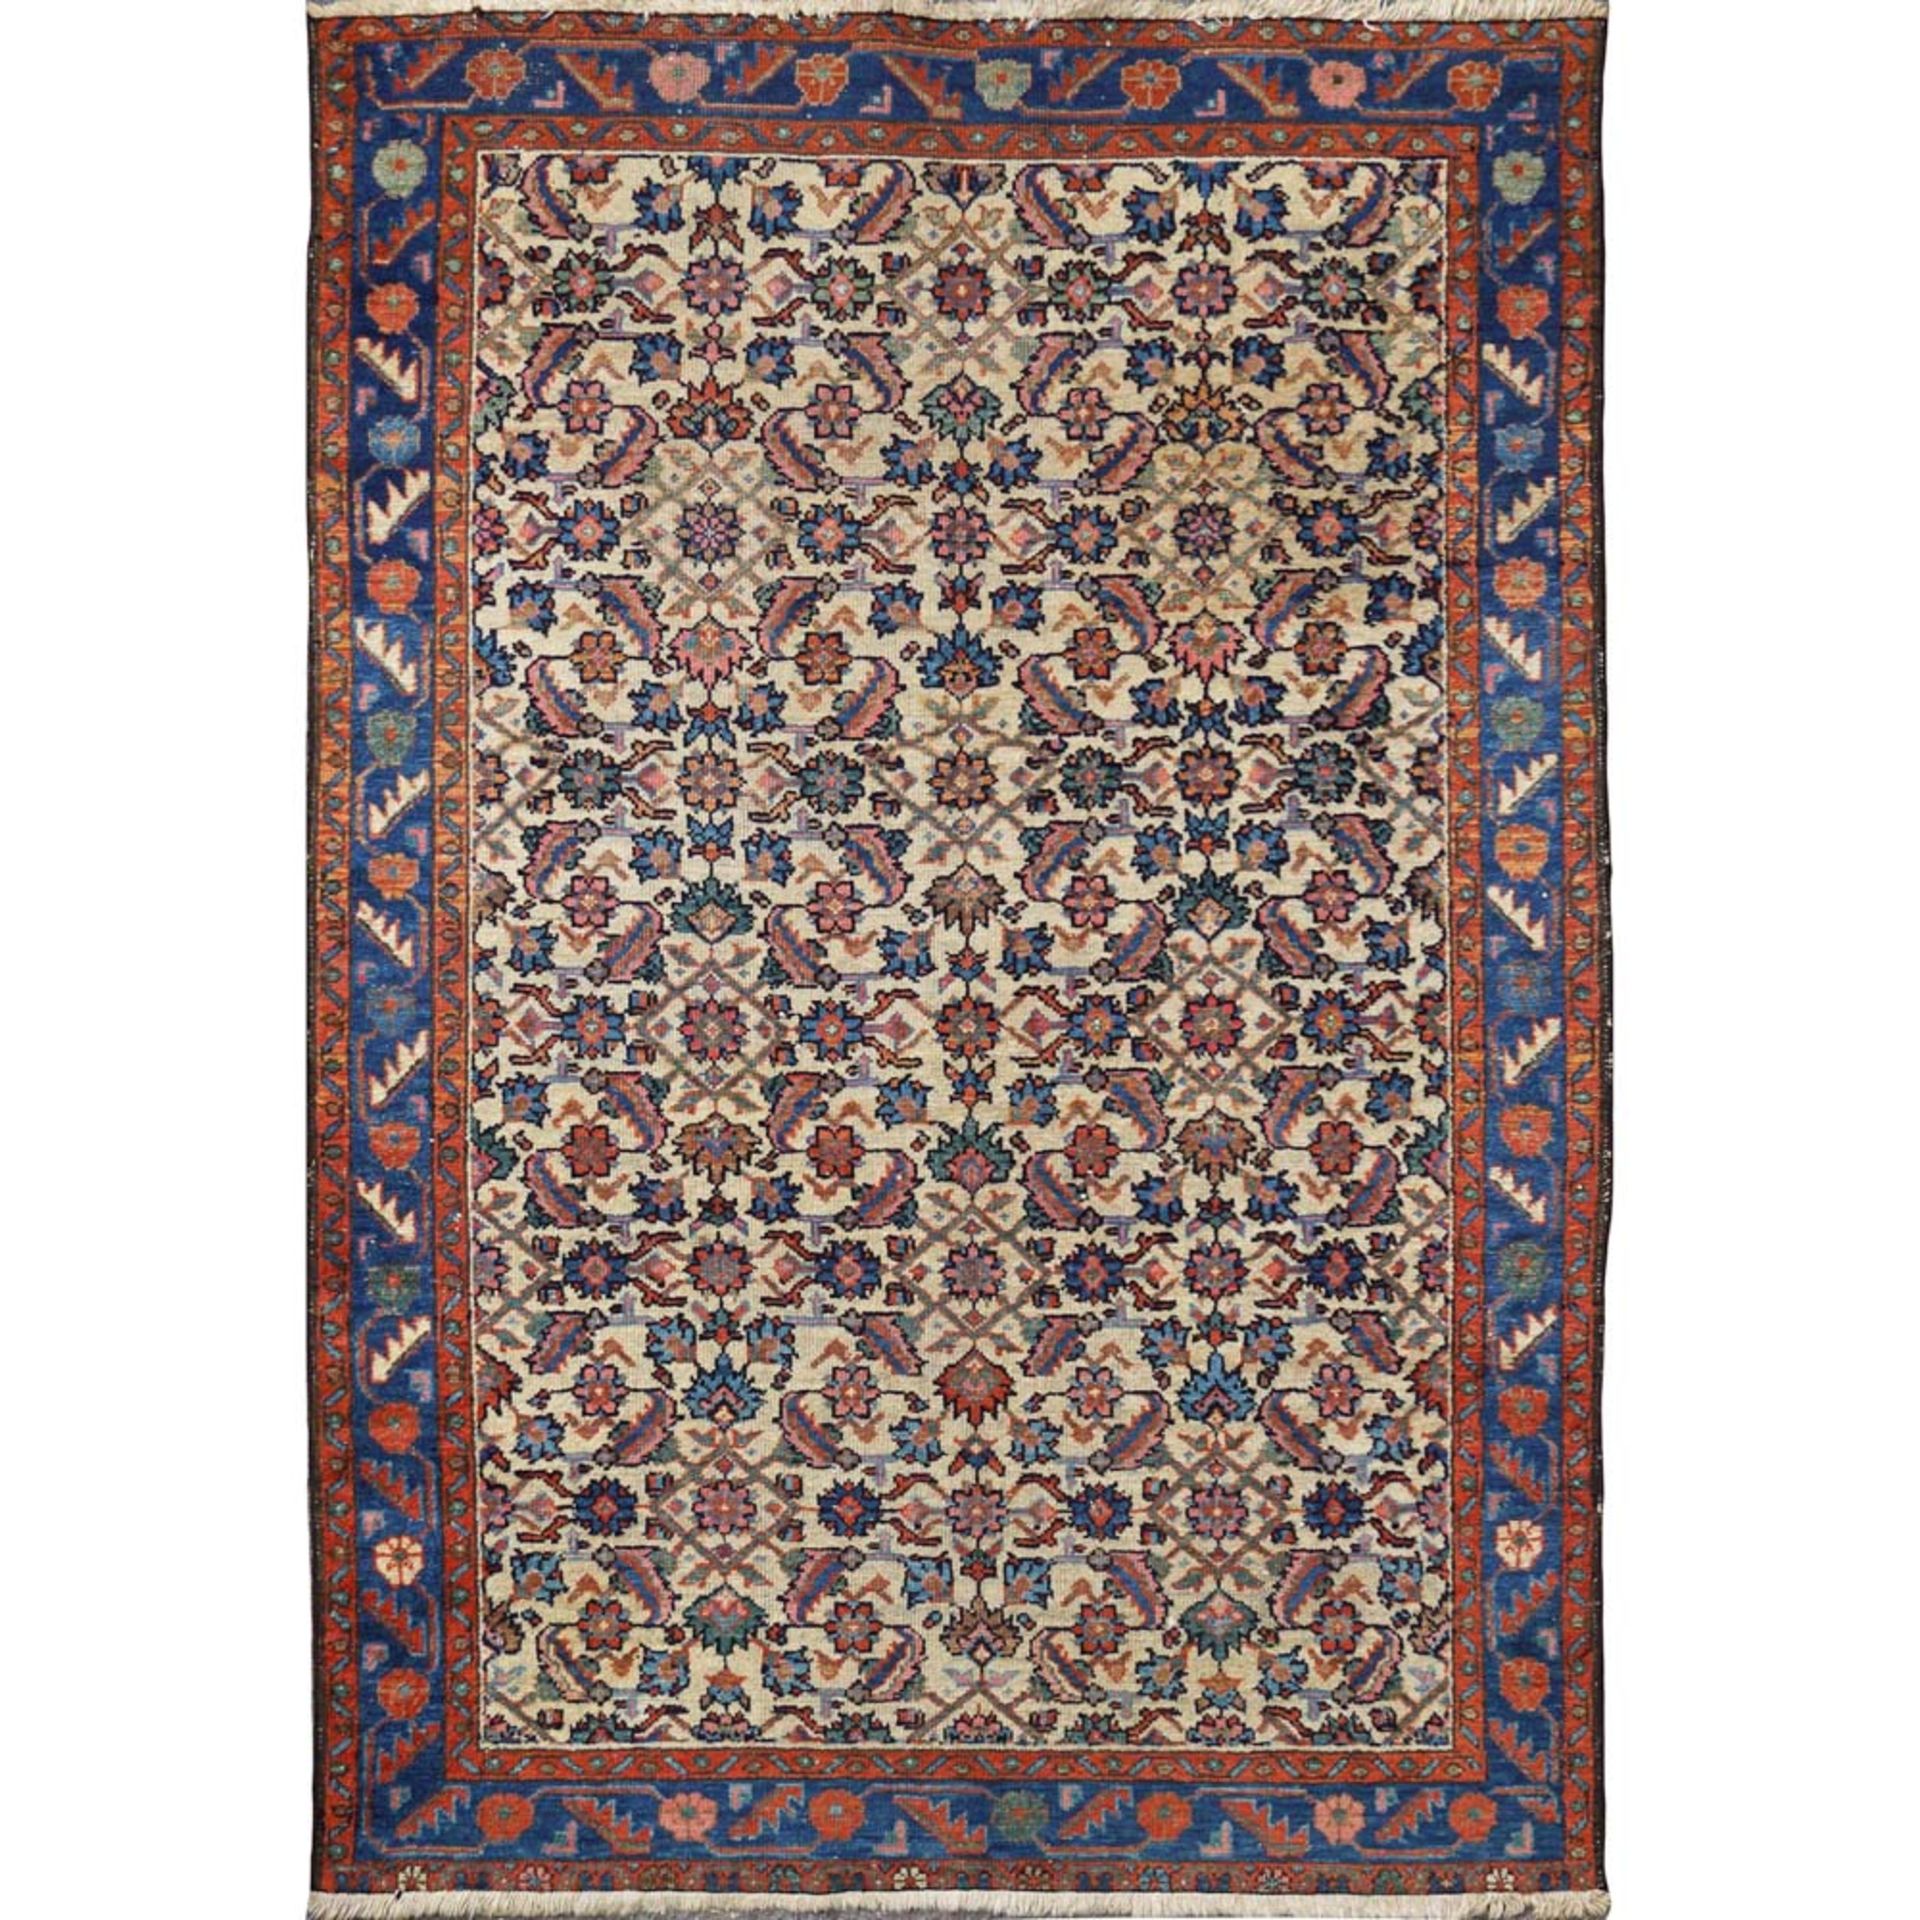 Persian carpet 20th century 190x128 cm.